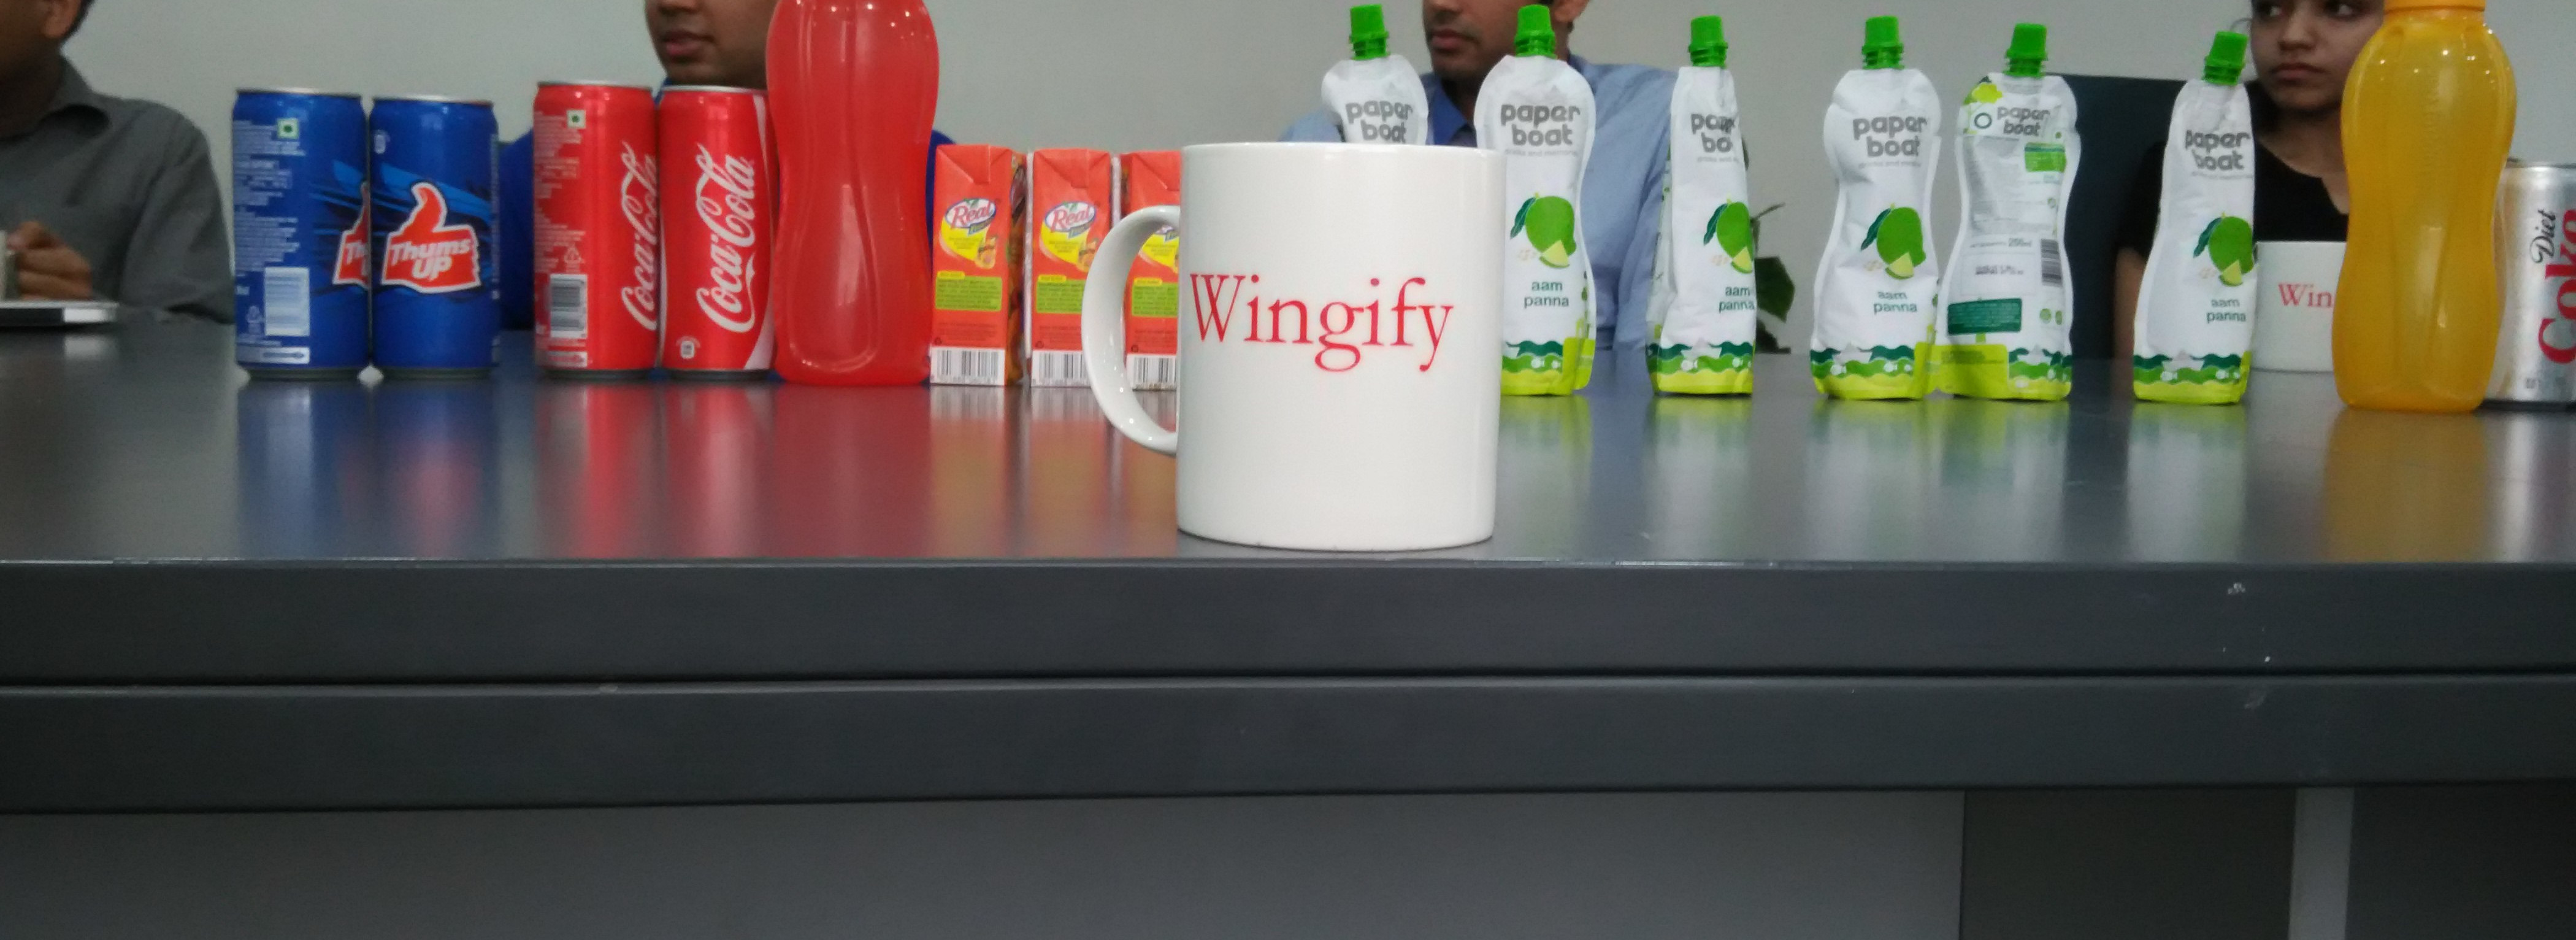 Wingify Cup